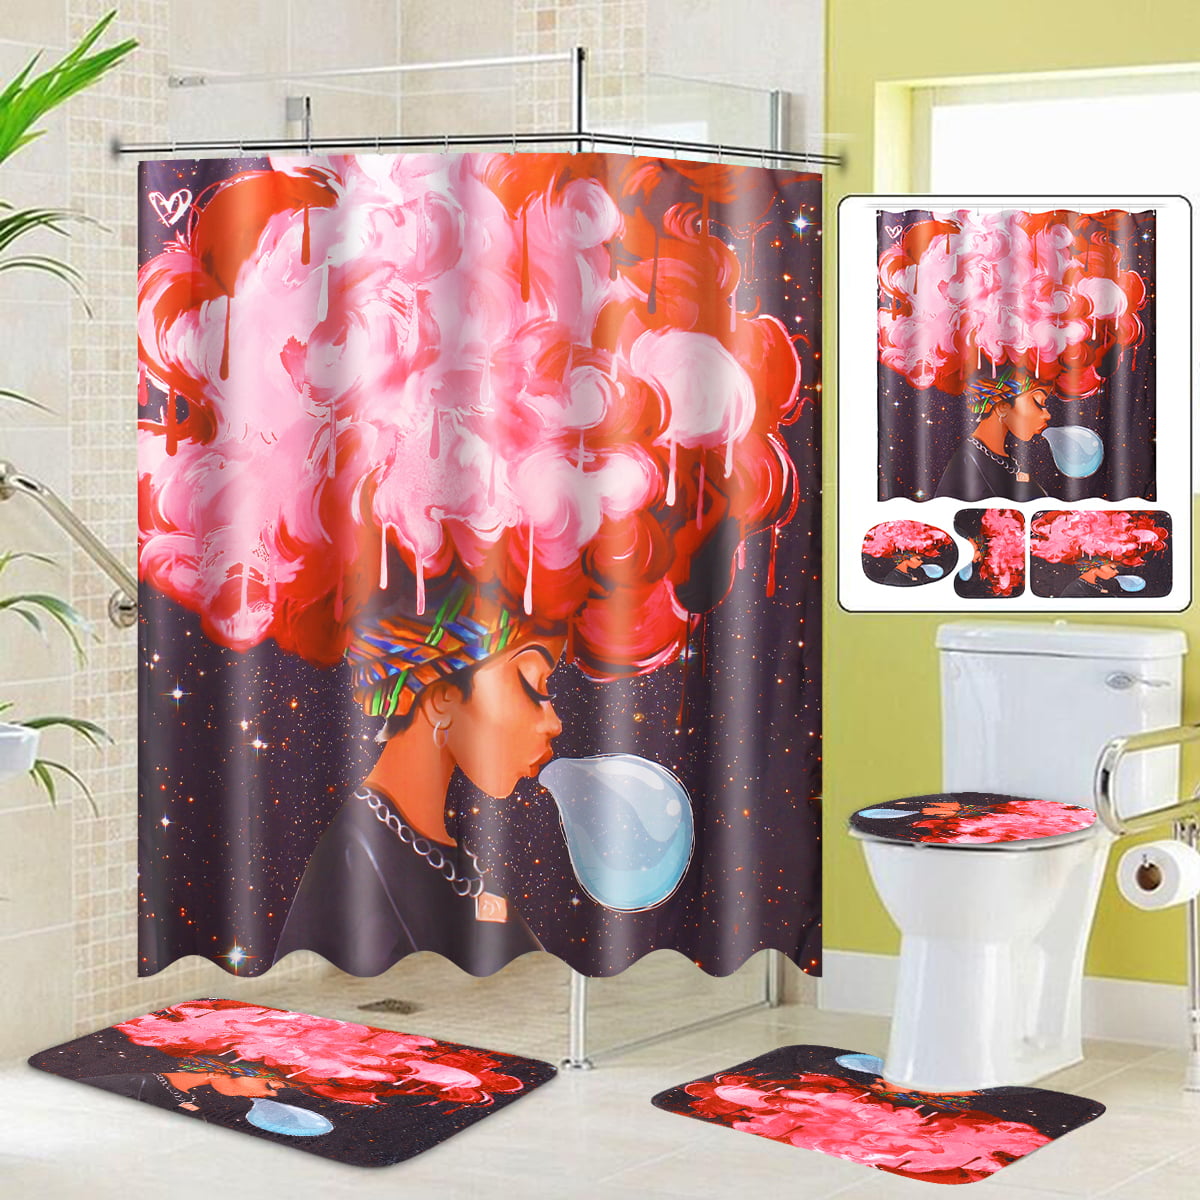 Shower Curtain Bathroom Carpet Non-Slip Pedestal Rug Lid Toilet Cover Bath Mat 